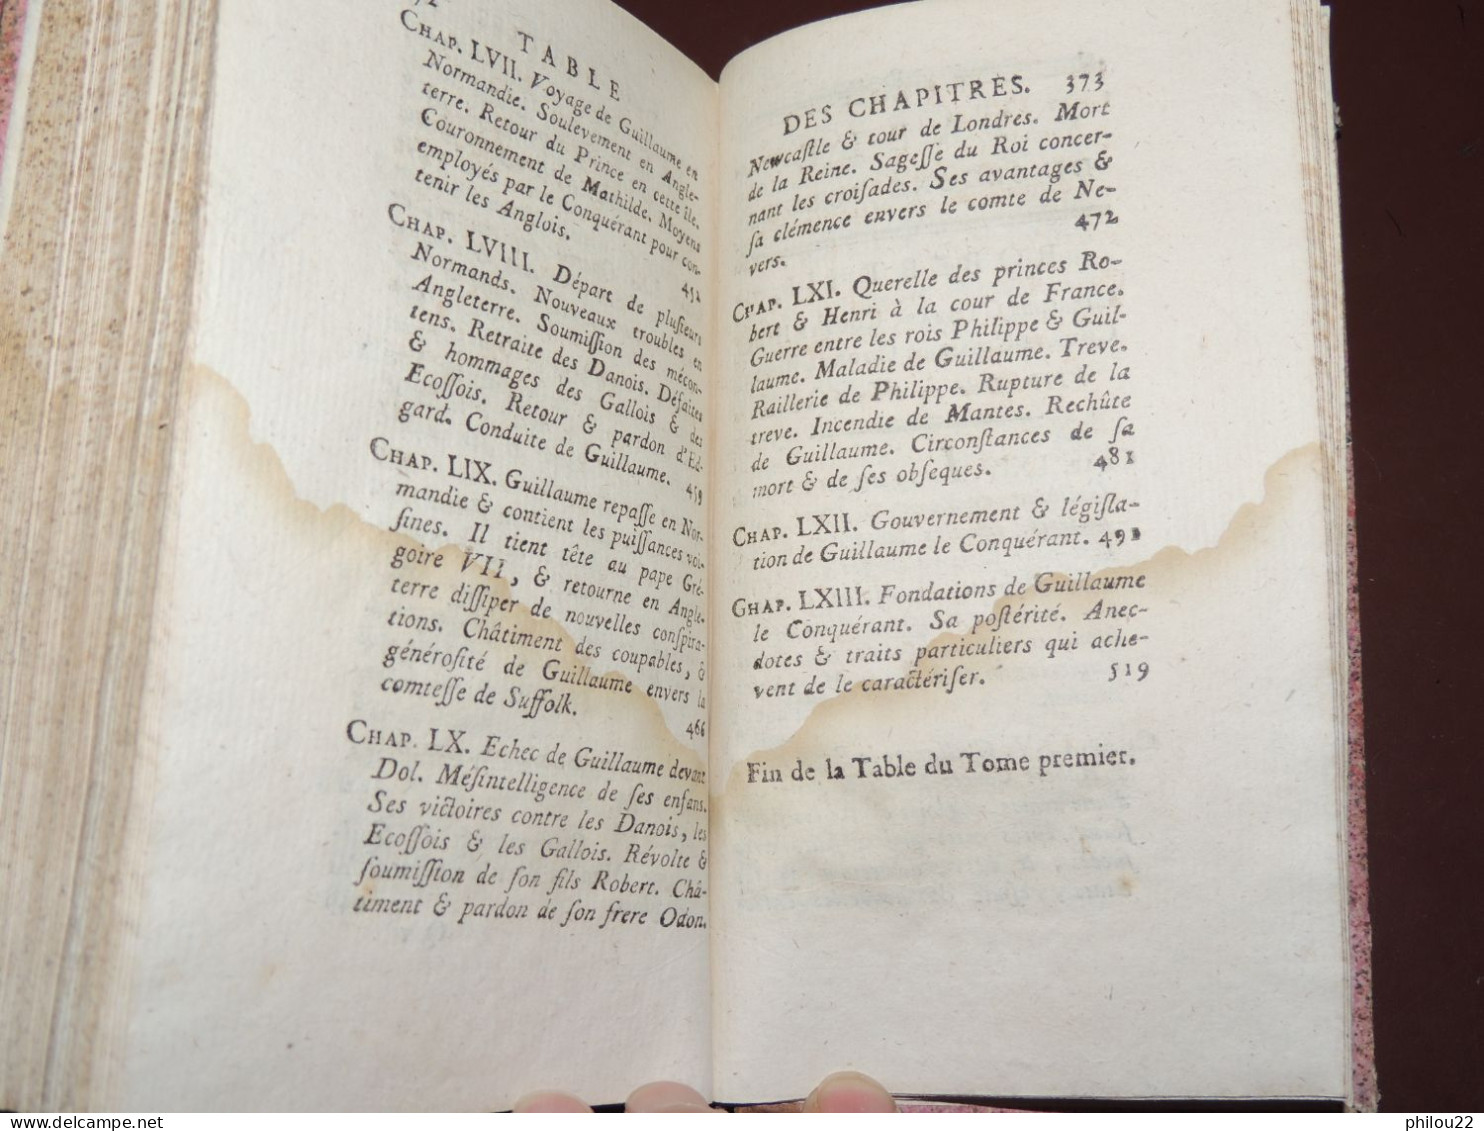 [Toustain-Richebourg] histoire de Neustrie ou de Normandie... 2/2 vol.  1789